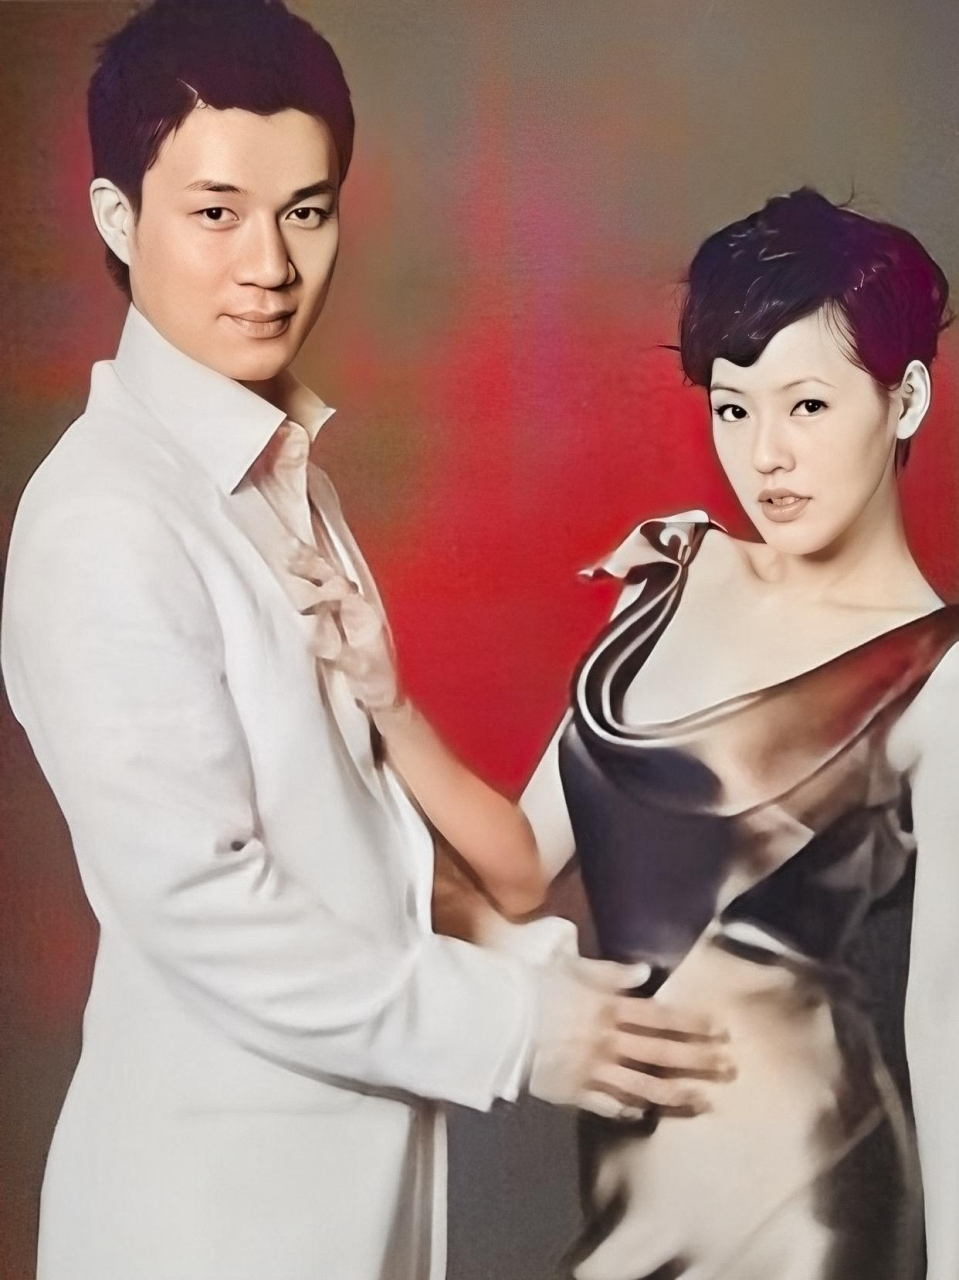 小s和丈夫许亚军,一张十年前的照片,有人说他们看起来像夫妻,也有人说